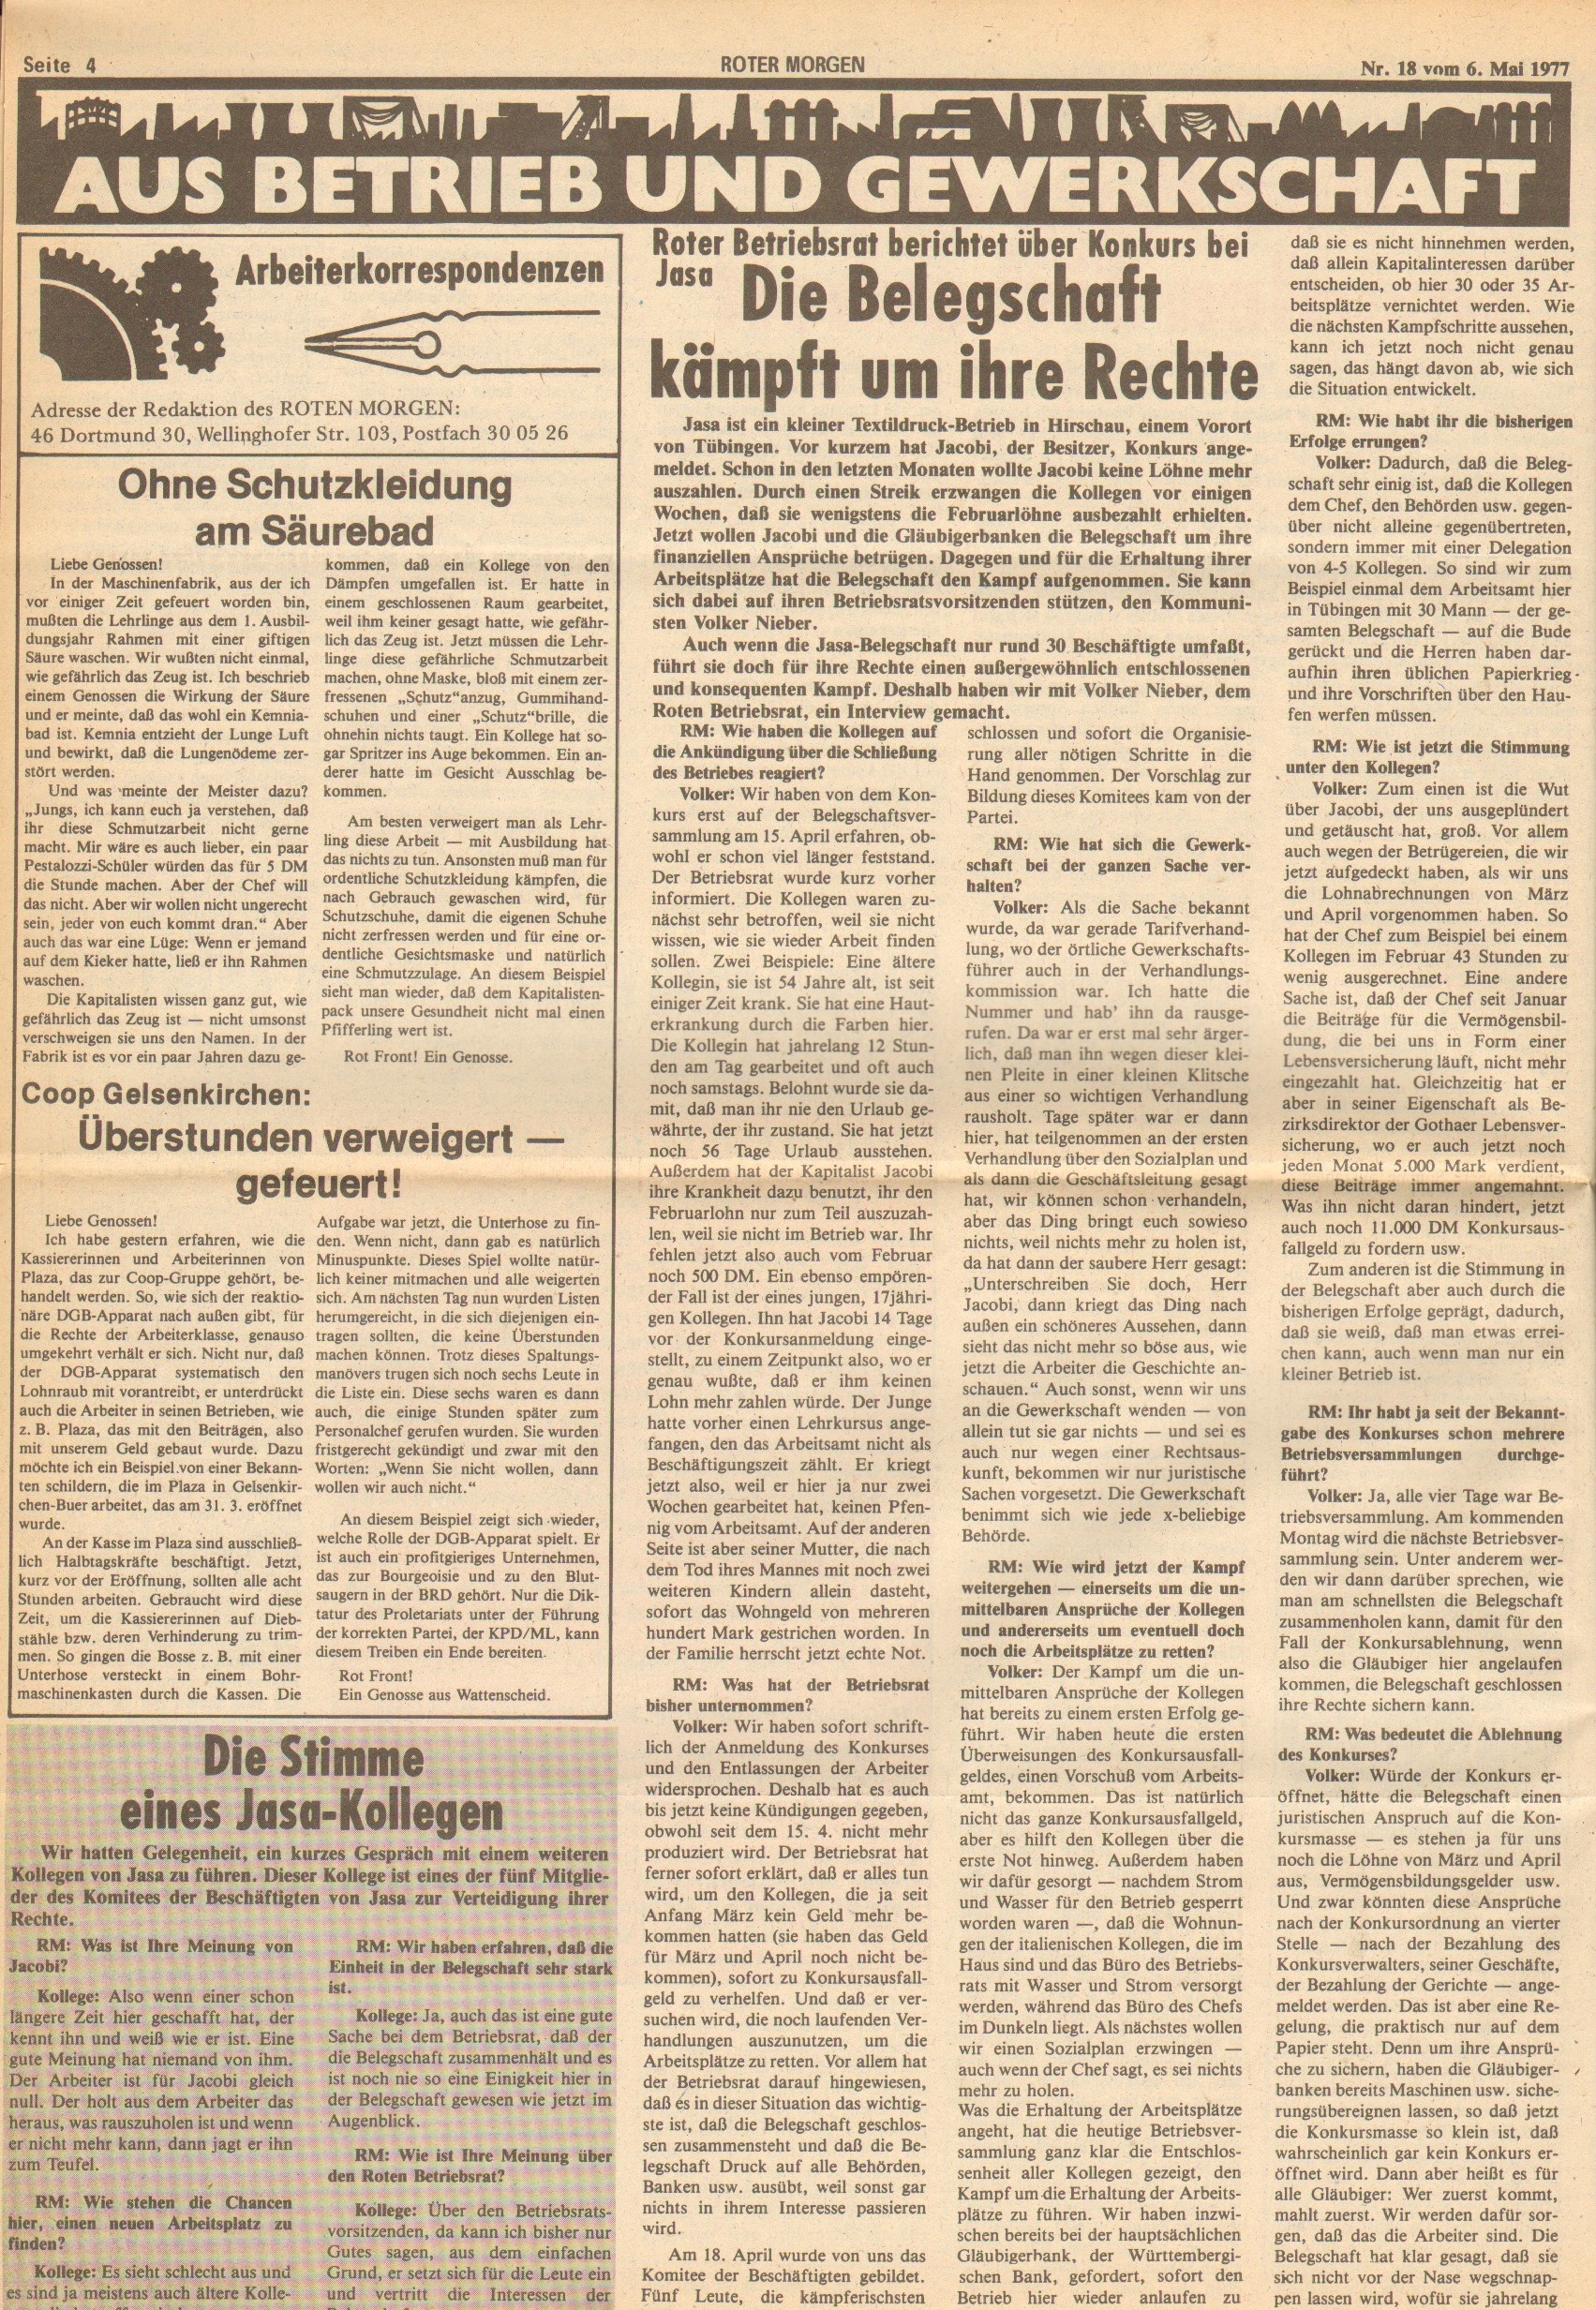 Roter Morgen, 11. Jg., 6. Mai 1977, Nr. 18, Seite 4